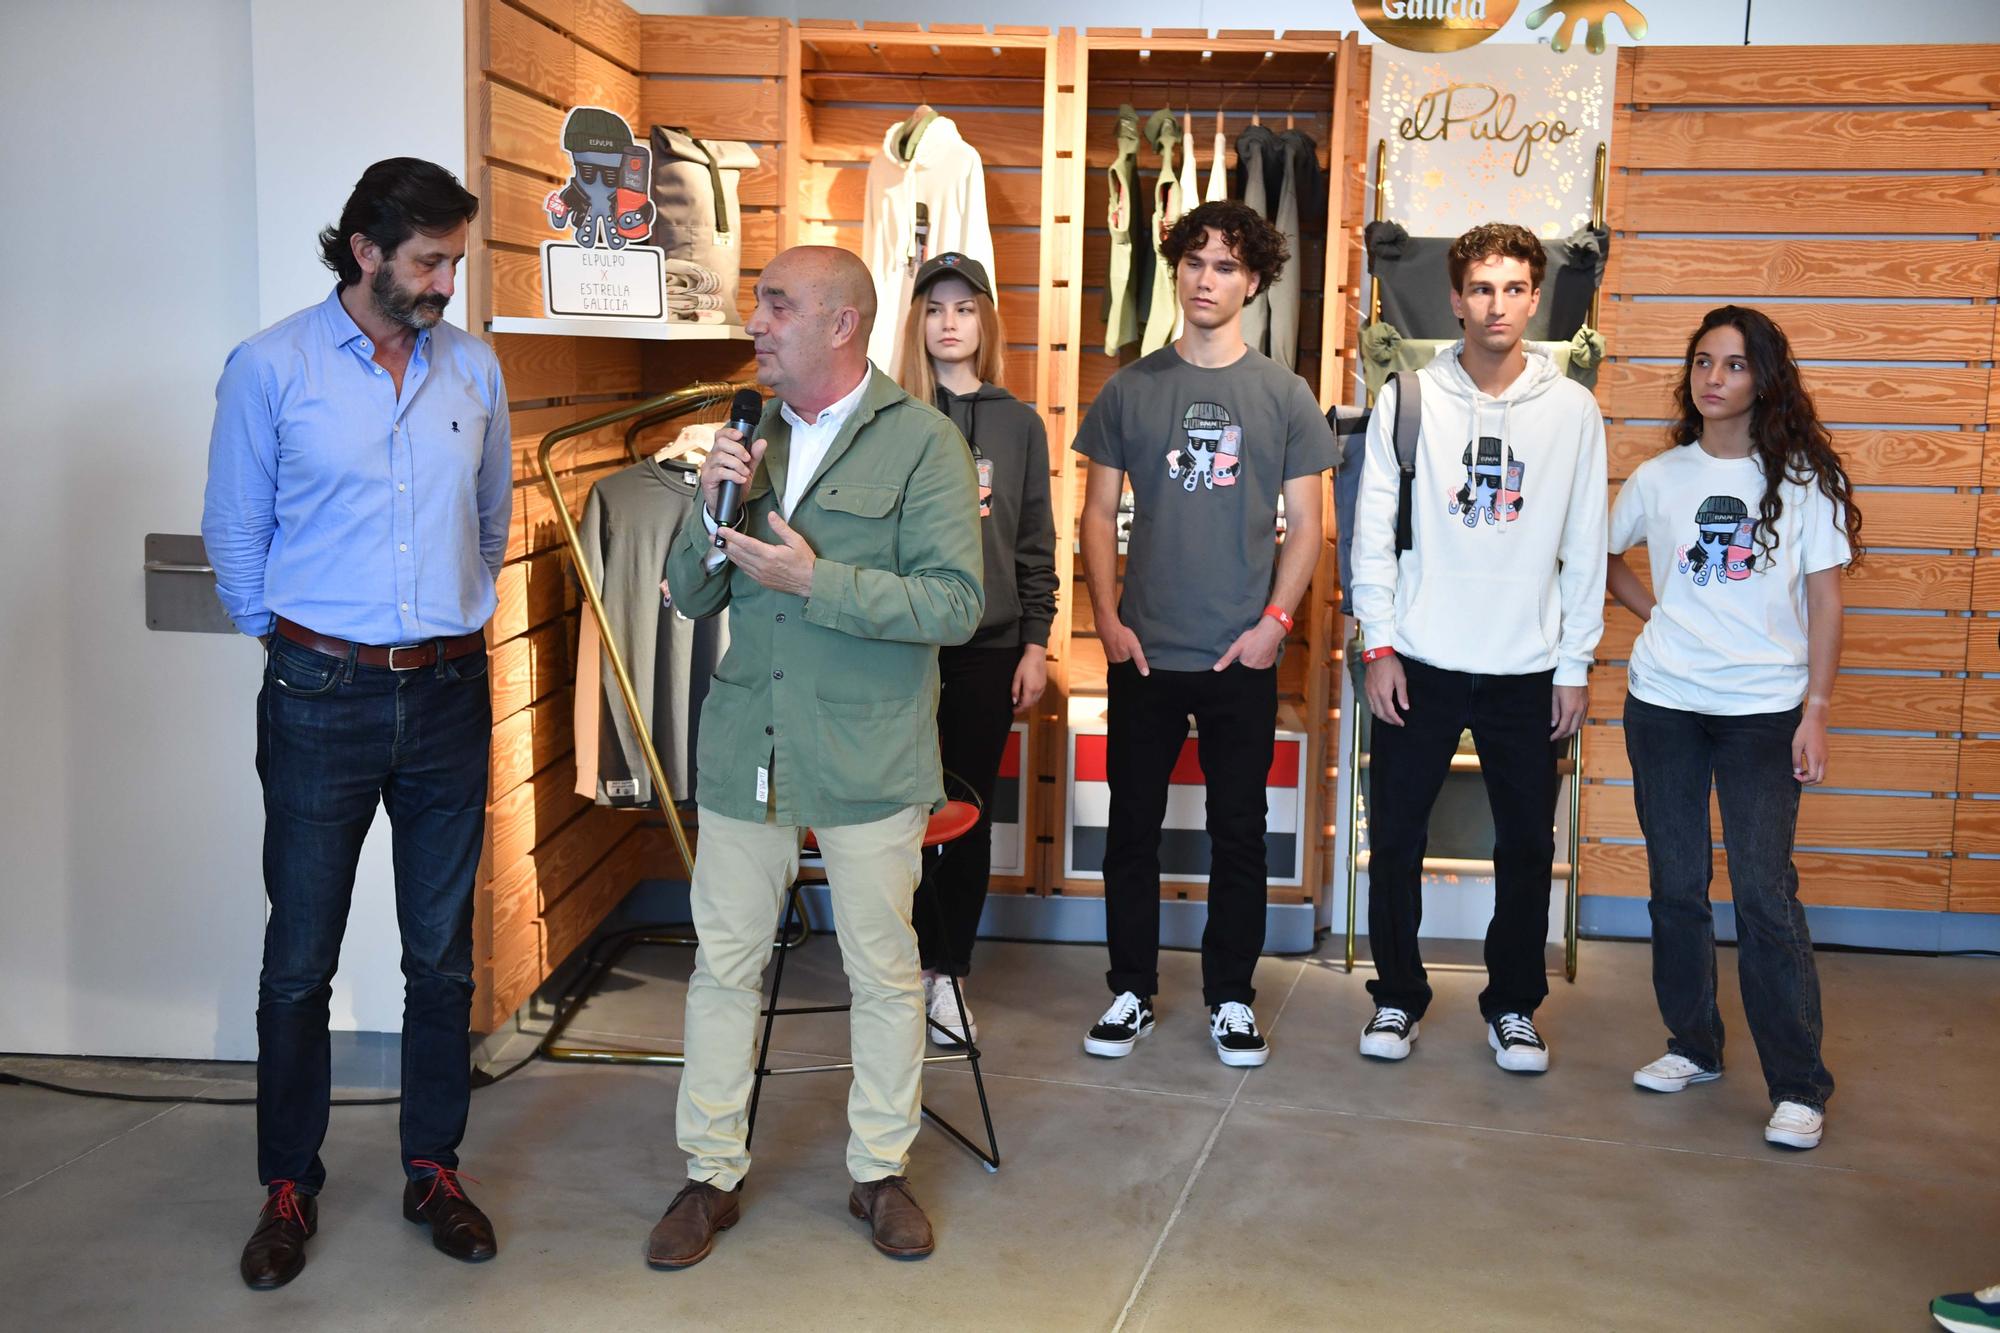 Estrella Galicia y la firma de moda El Pulpo lanzan su primera colaboración conjunta